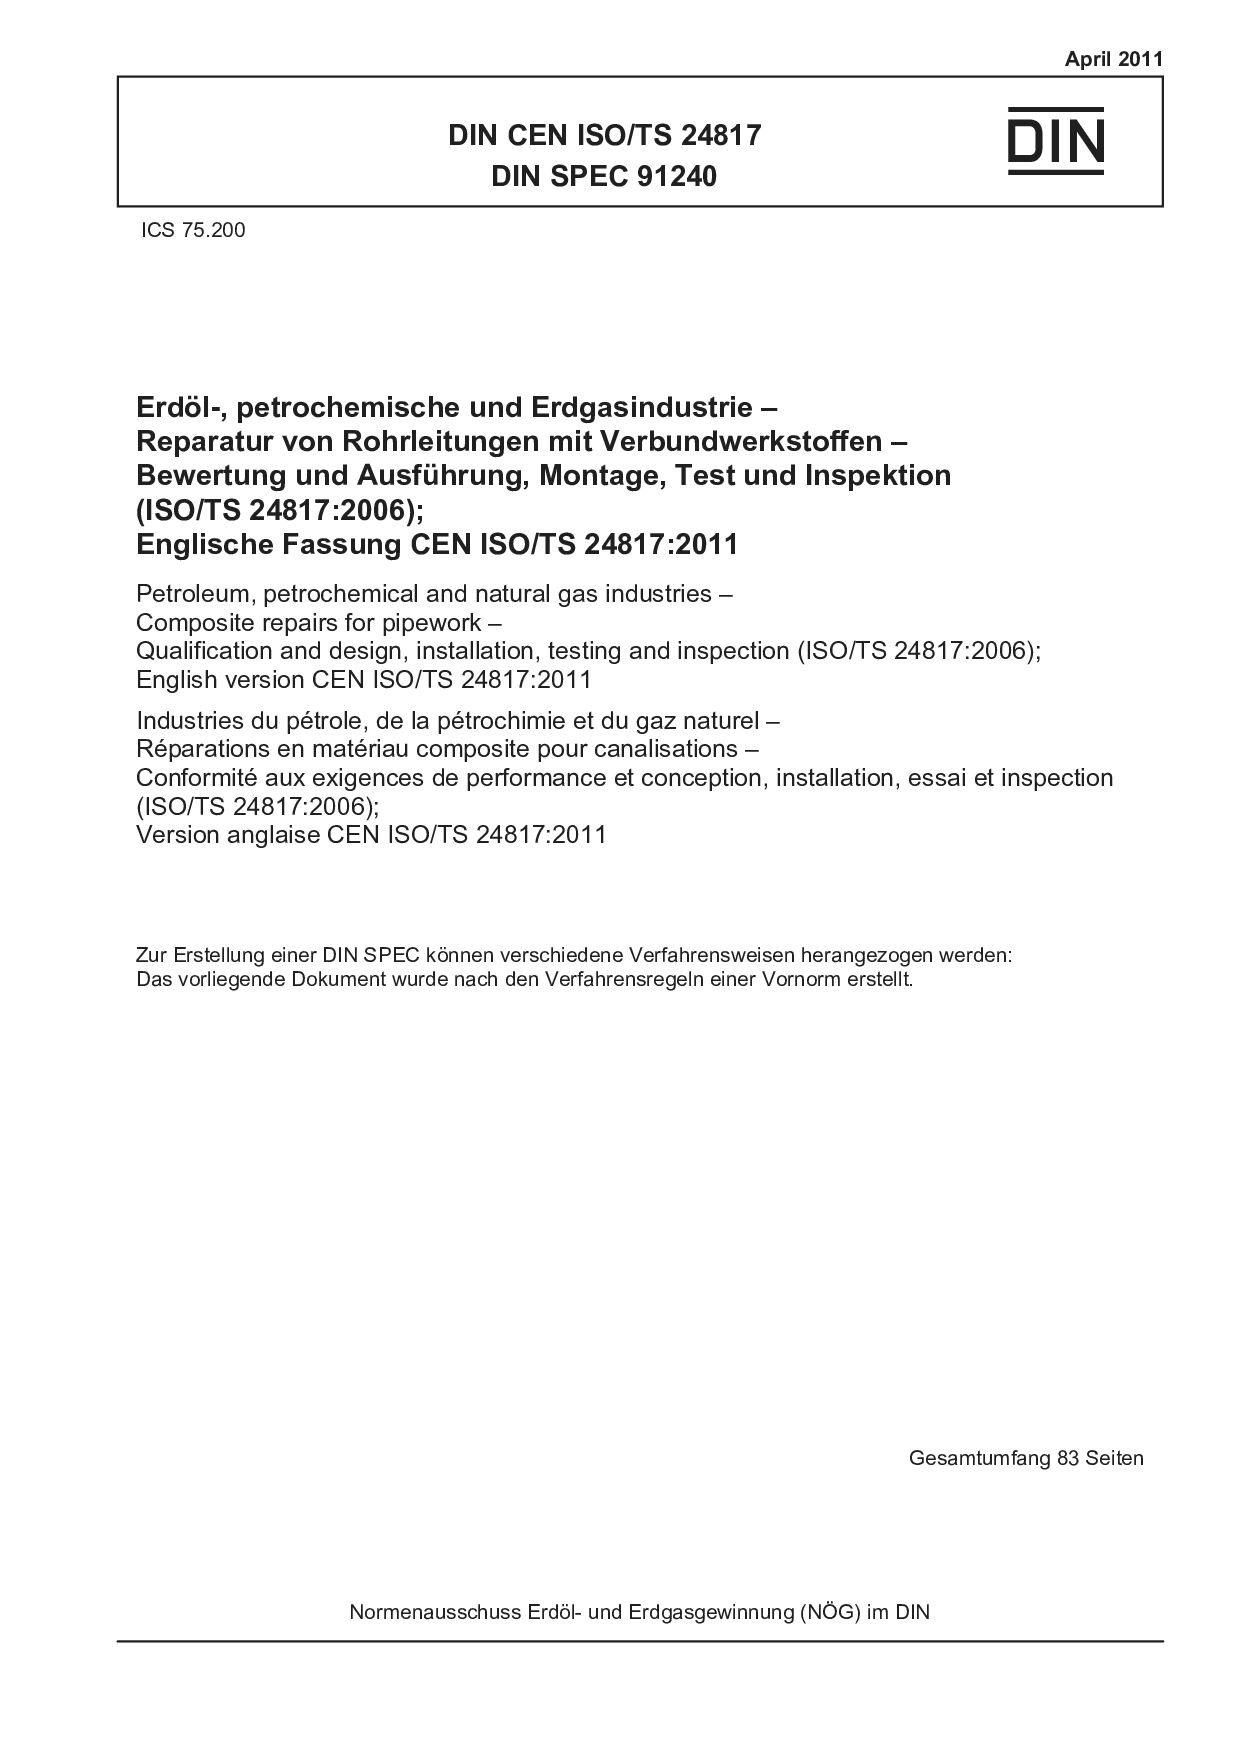 DIN CEN ISO/TS 24817:2011